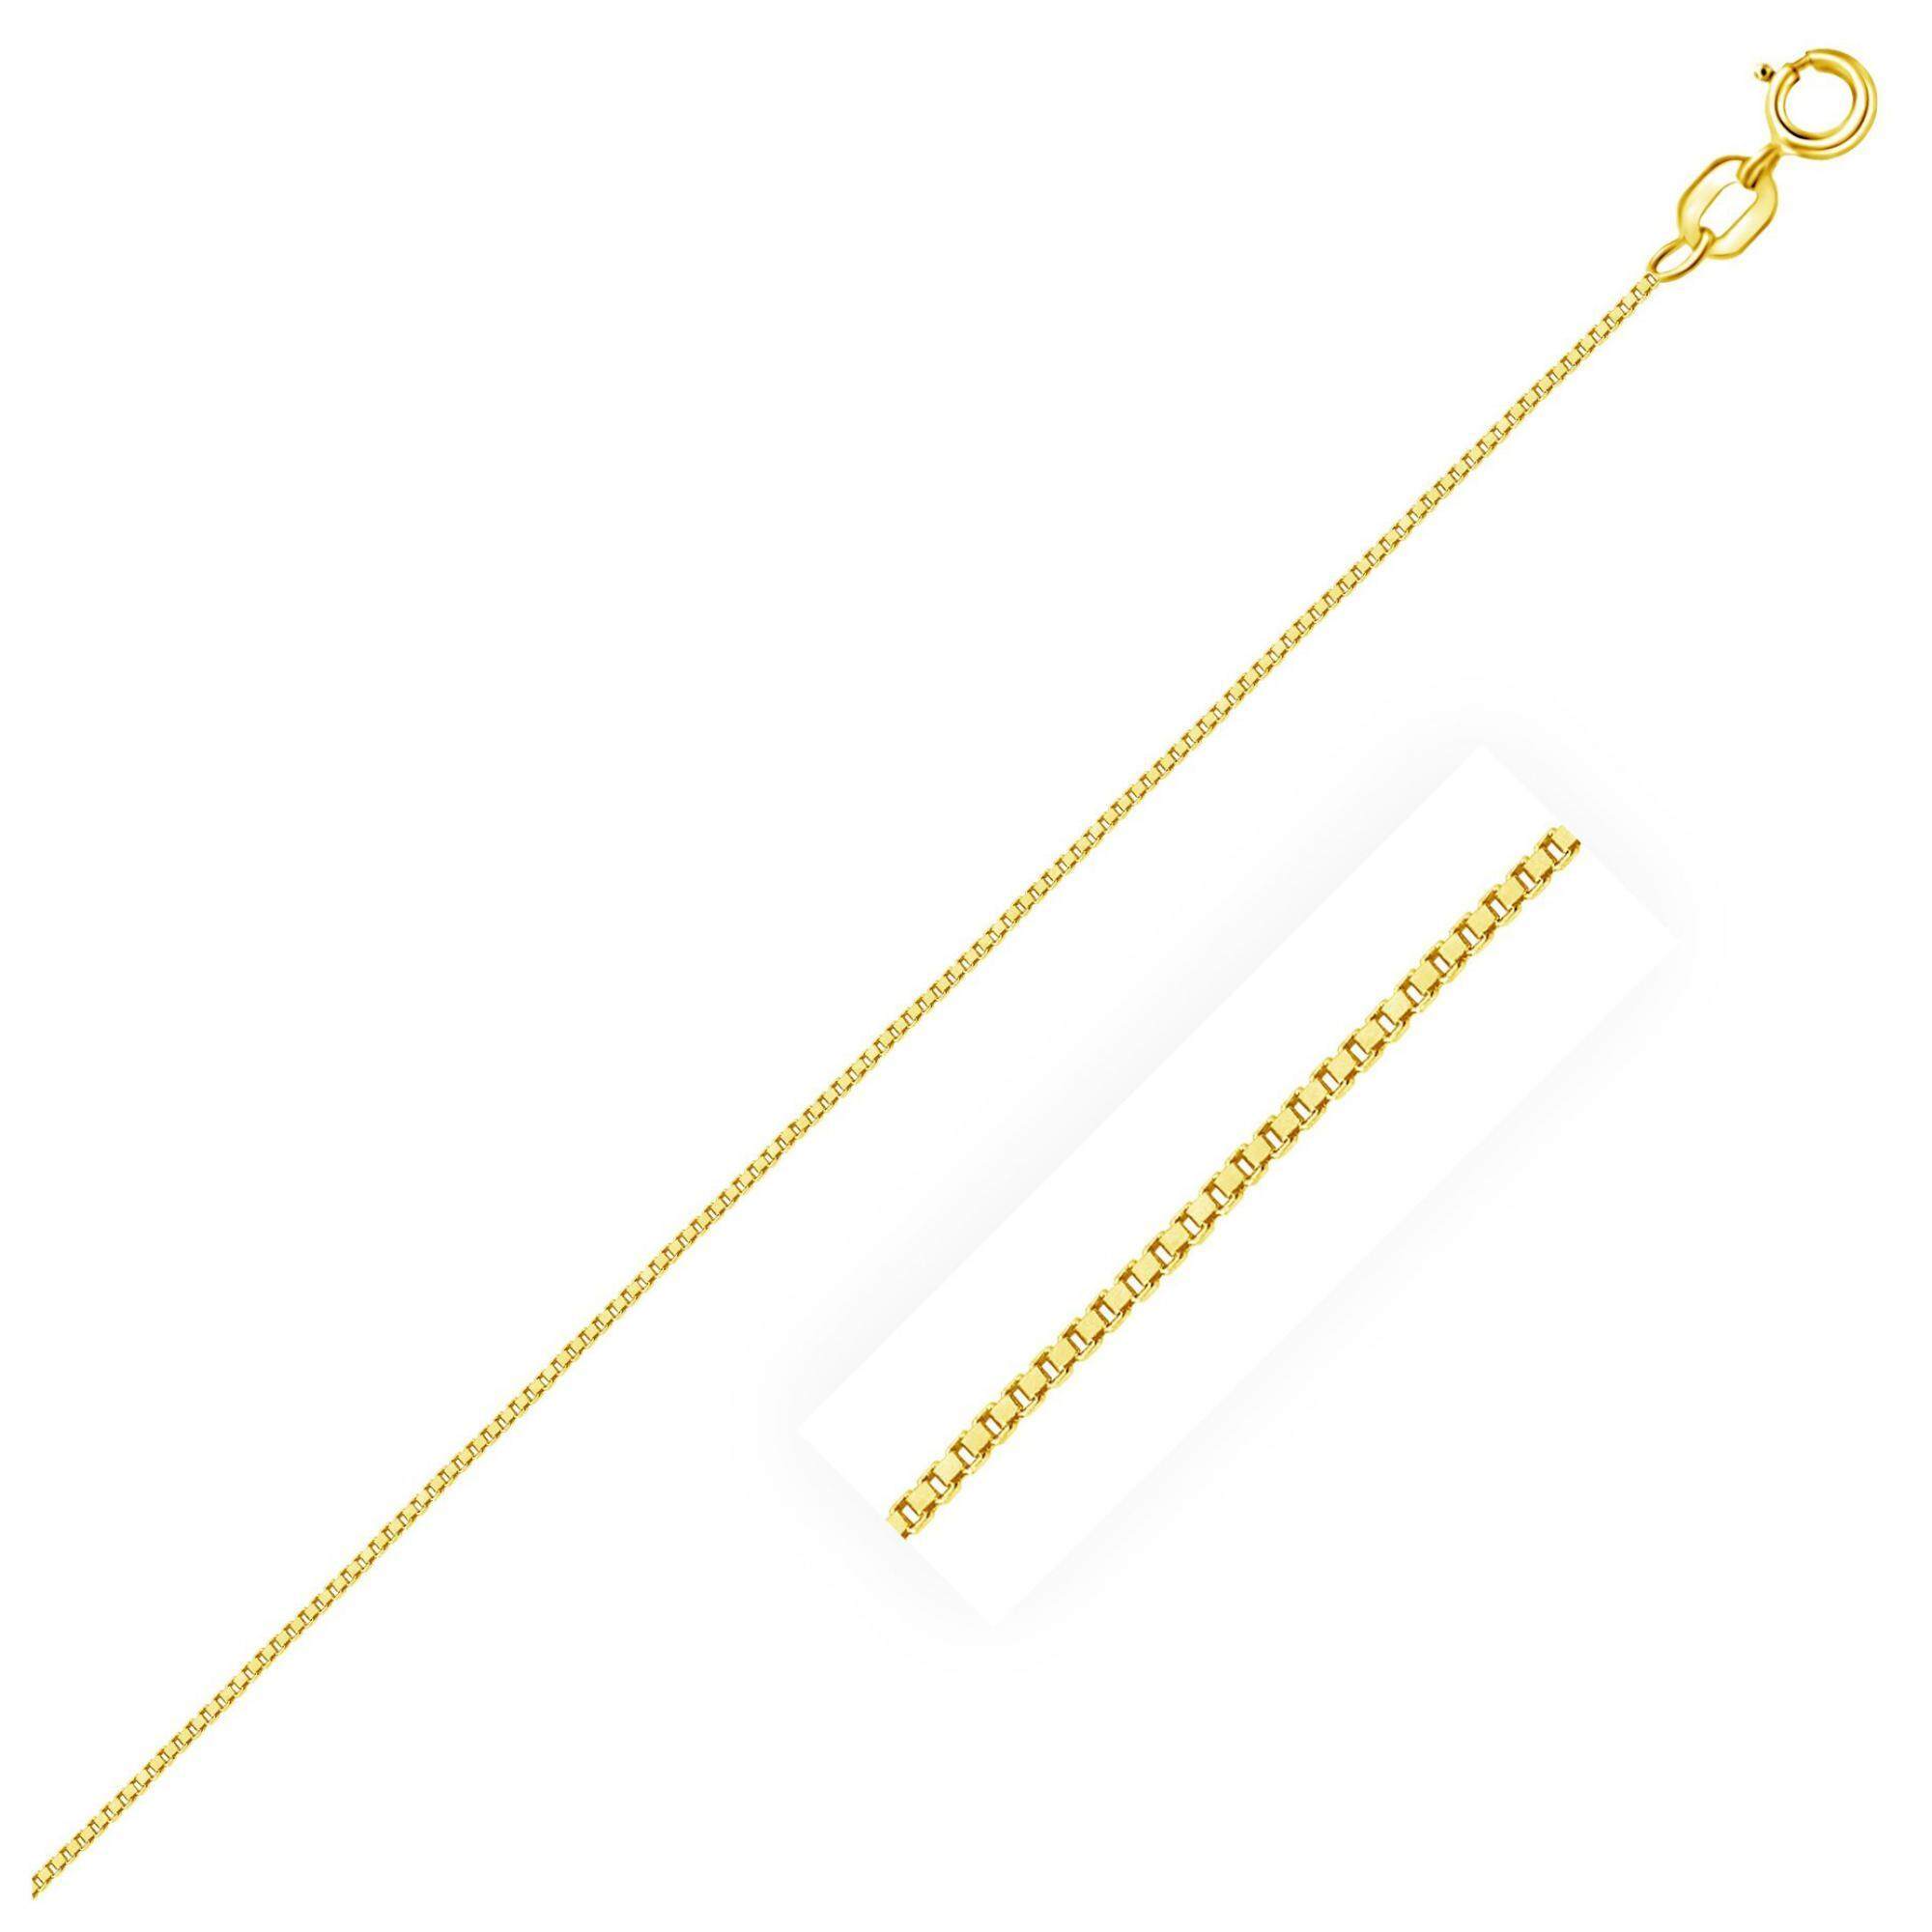 สร้อยคอทองคำ 10k ขนาด 0.6 mm. ความยาว 16-24 นิ้ว  10k Yellow Gold necklace, size 0.6 mm. 16-24 inches long